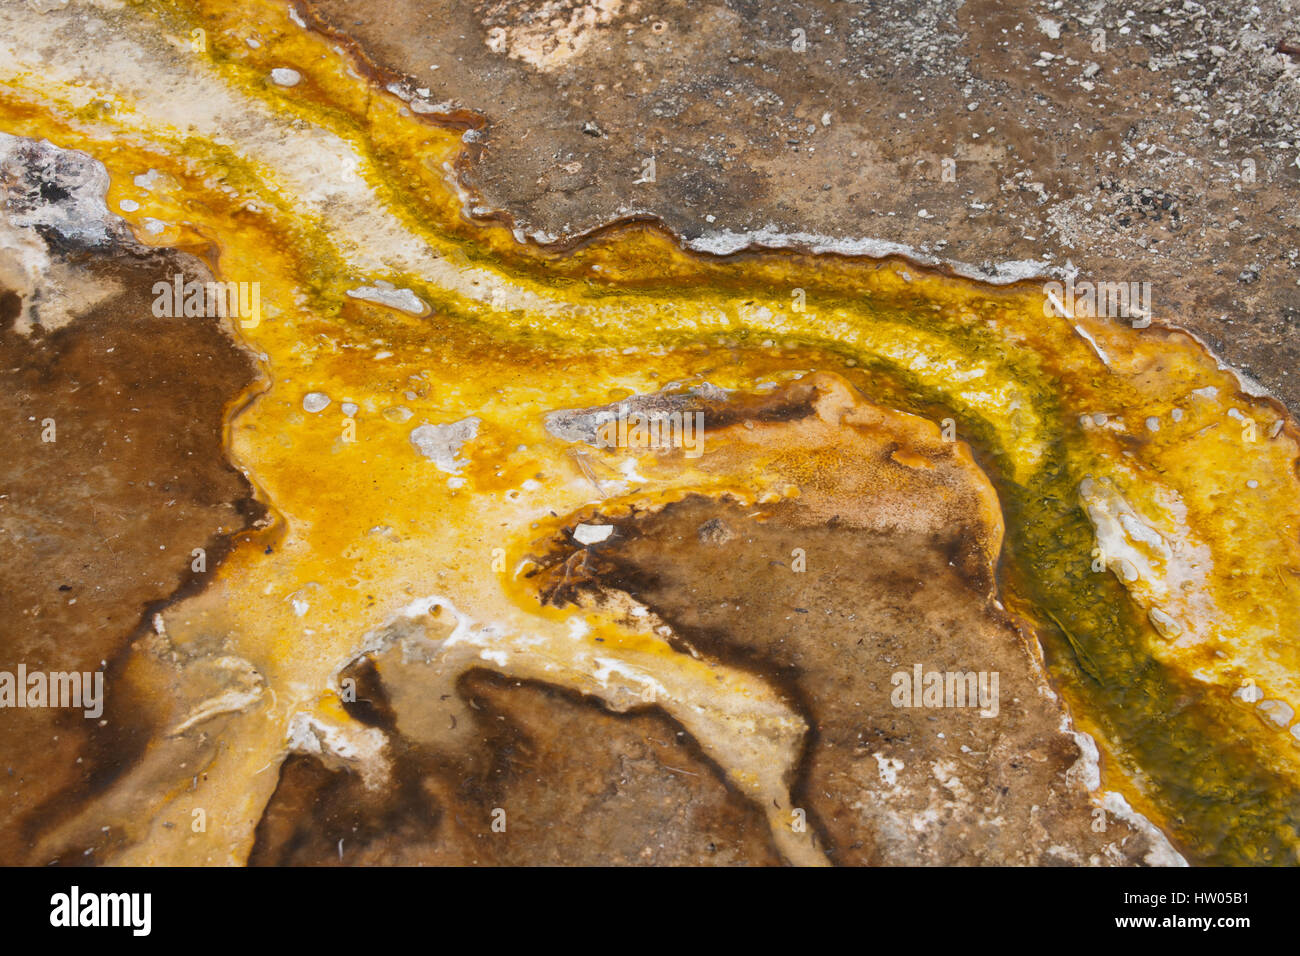 Bacterias termales mat en el Parque Nacional Yellowstone, Wyoming, EE.UU. Foto de stock